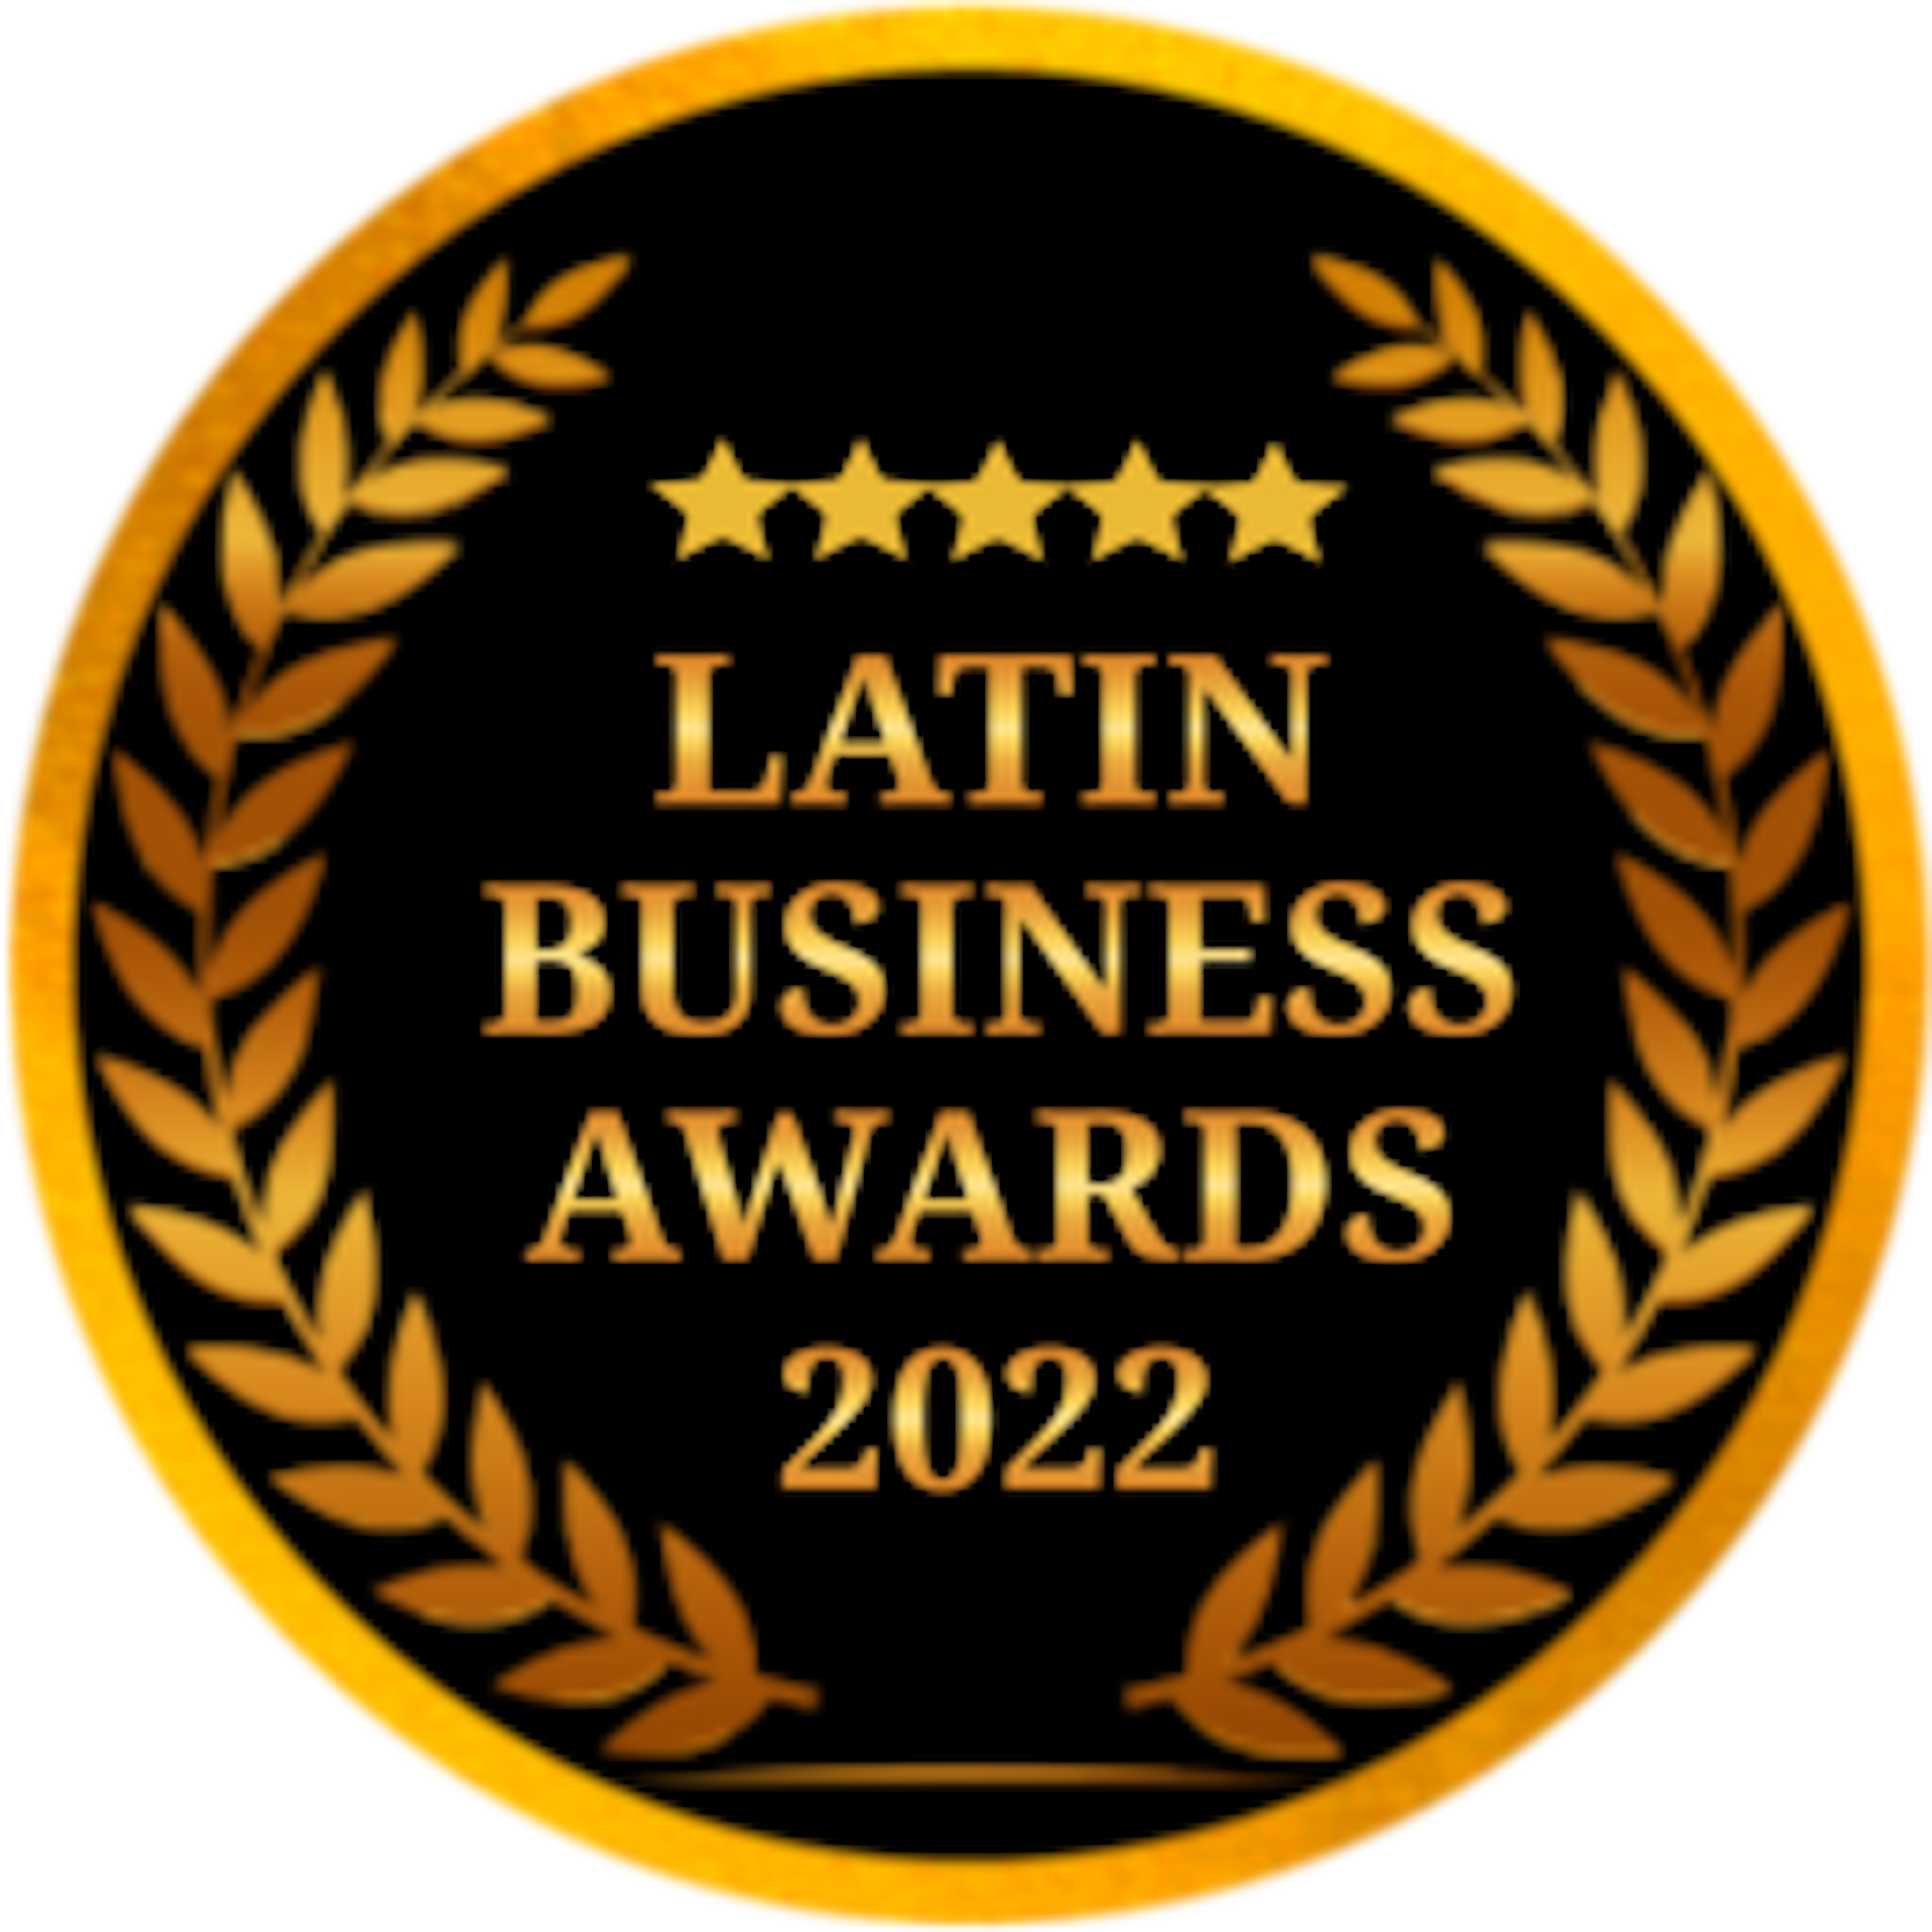 Latin Business Awards 